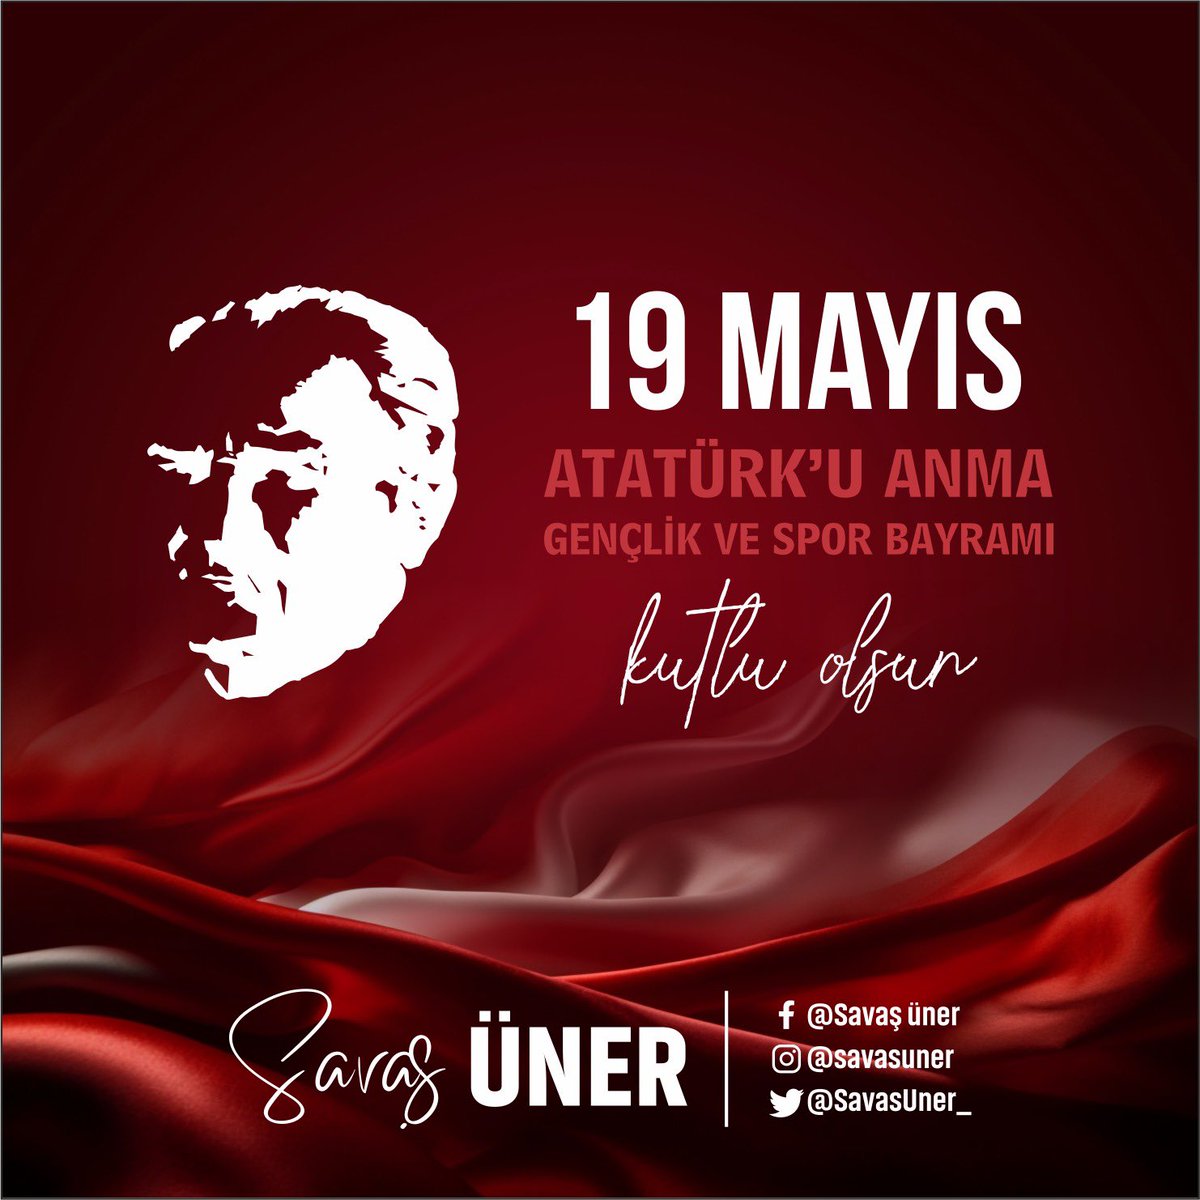 Milletin istiklalini yine milletin azim ve kararı kurtaracaktır. 19 Mayıs Atatürk’ü Anma Gençlik ve Spor Bayramımız kutlu olsun…